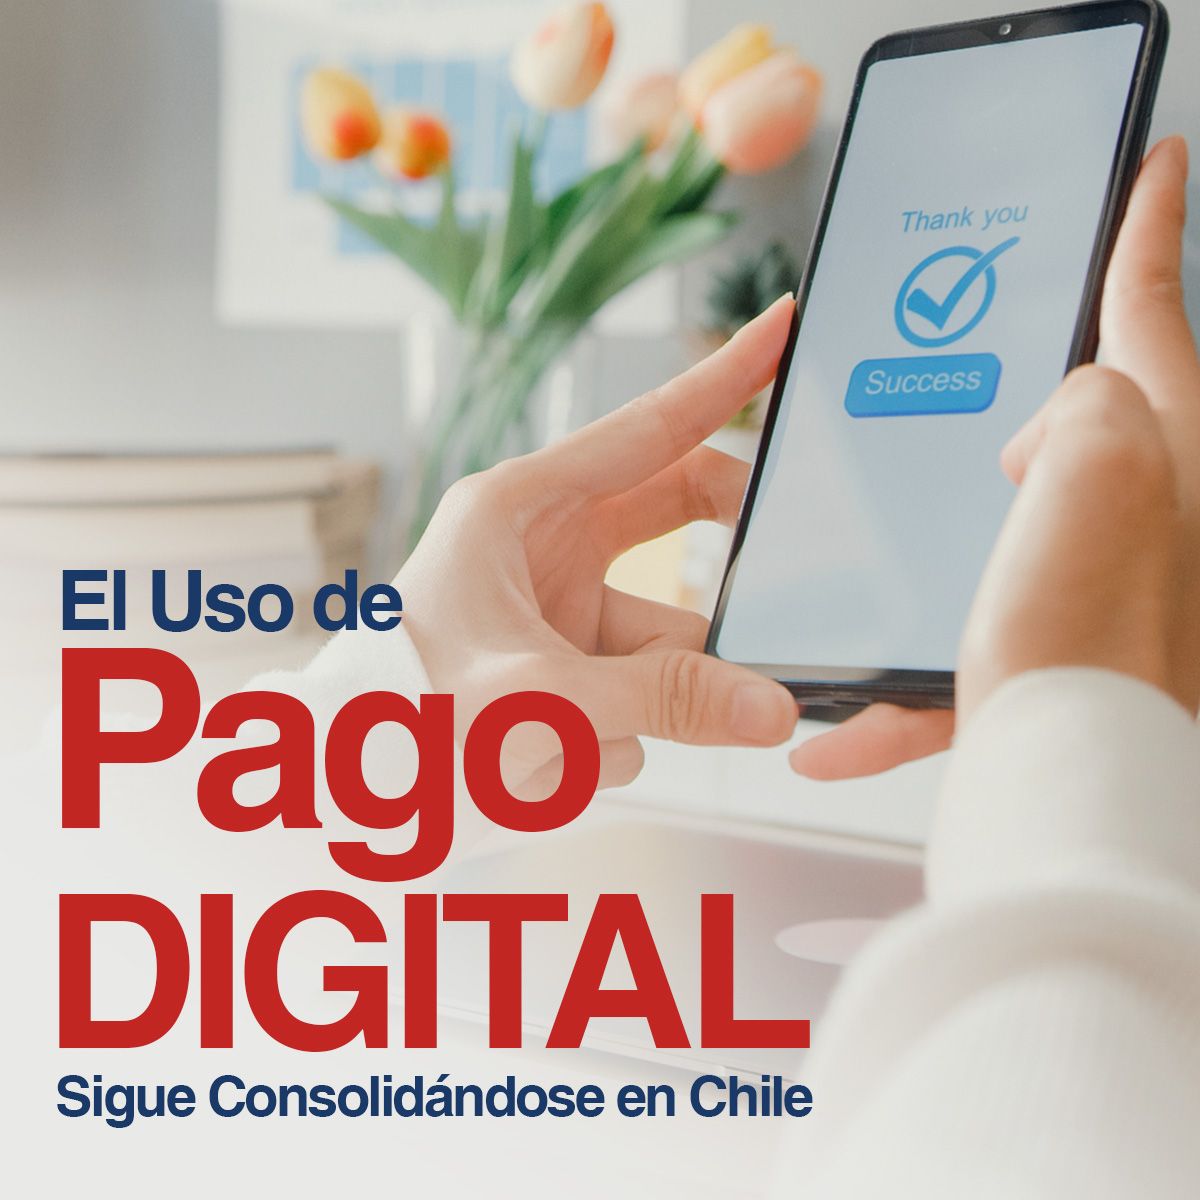 El Uso de Pago Digital Sigue Consolidándose en Chile